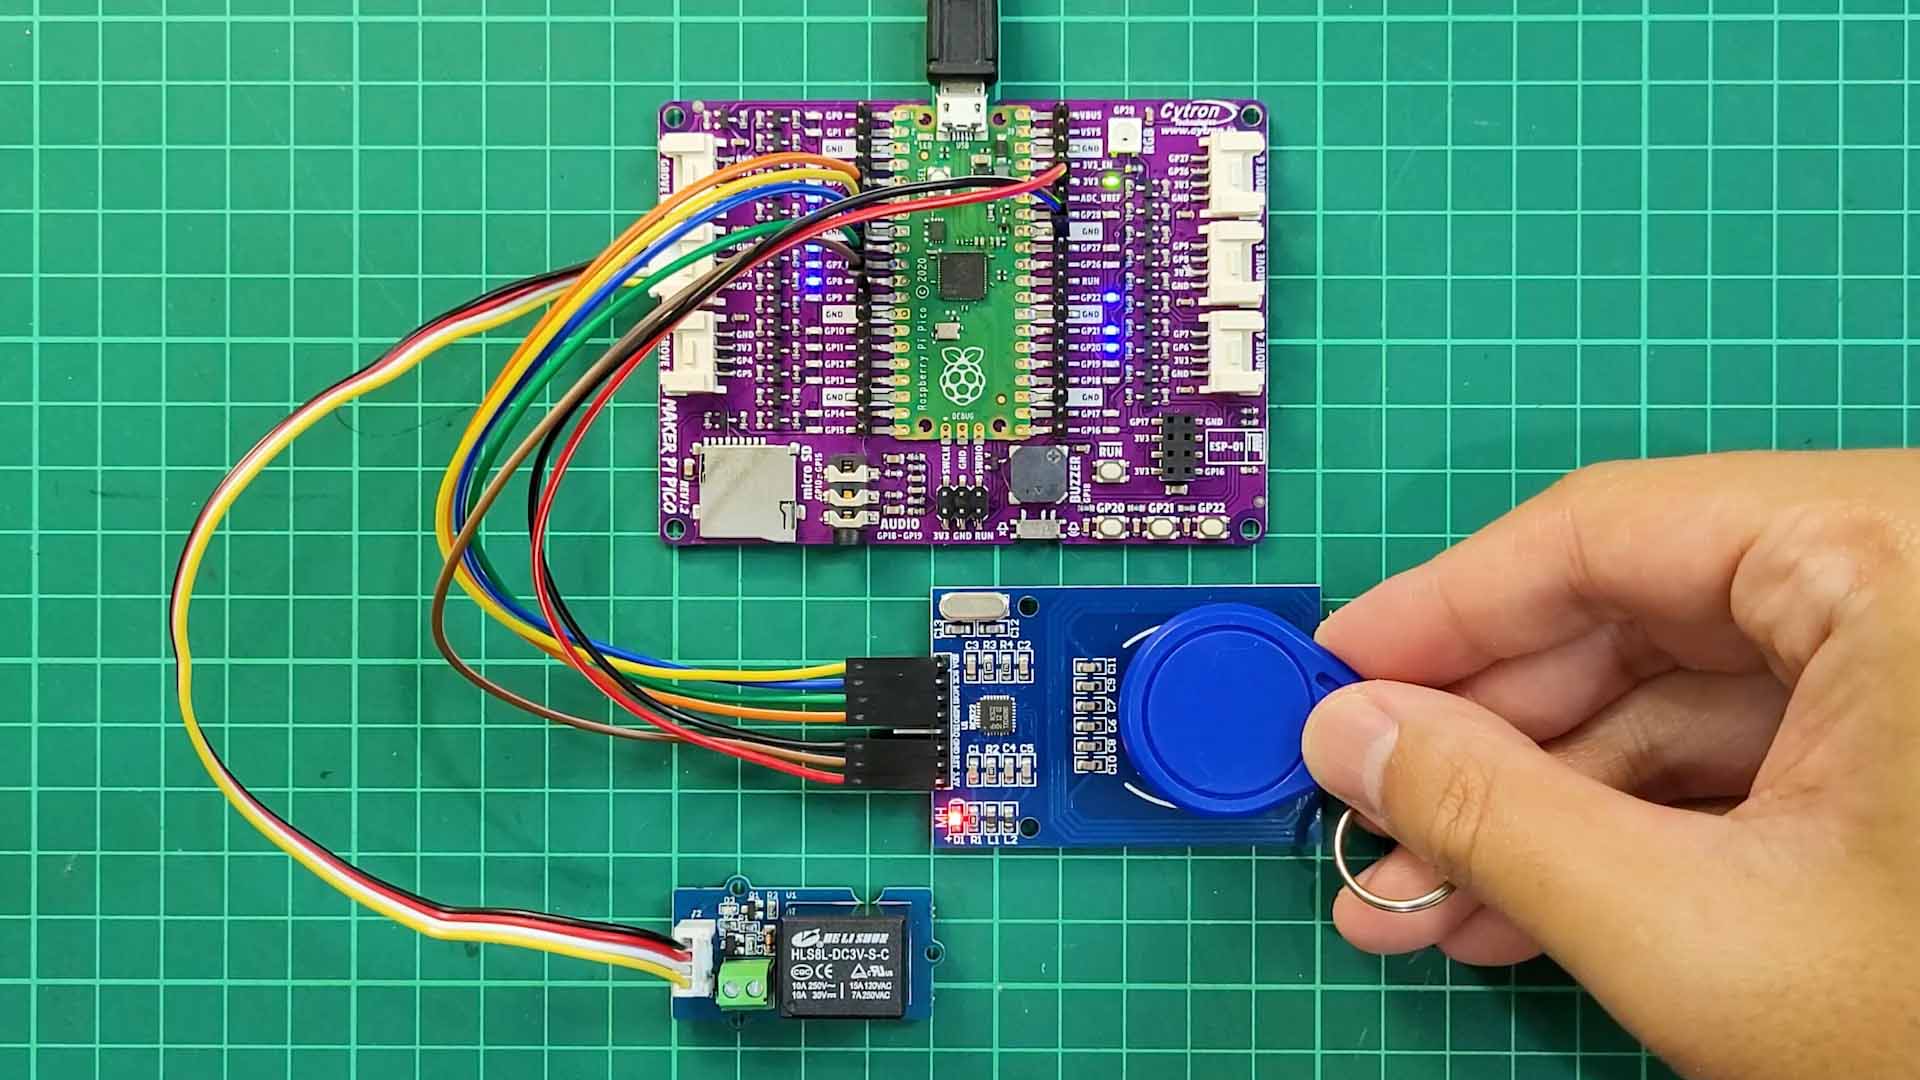 Interface RFid RC522 Reader using Maker Pi Pico and CircuitPython